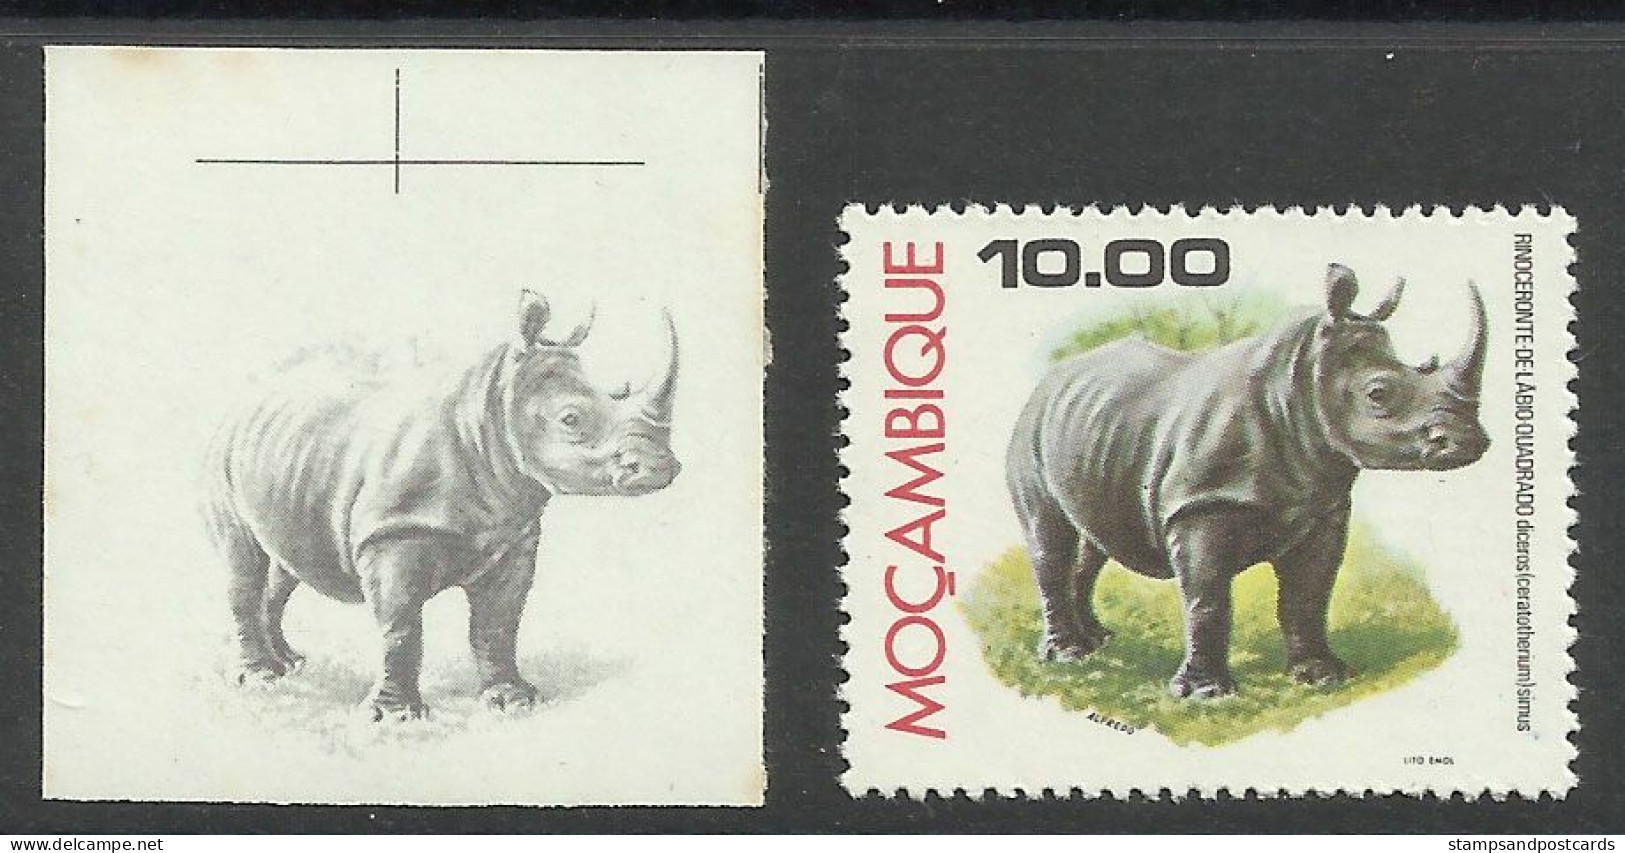 Mozambique 1976 Preuve De Couleur Rhinocéros Moçambique 1976 Color Proof Rhino Rhinocerus - Rhinocéros